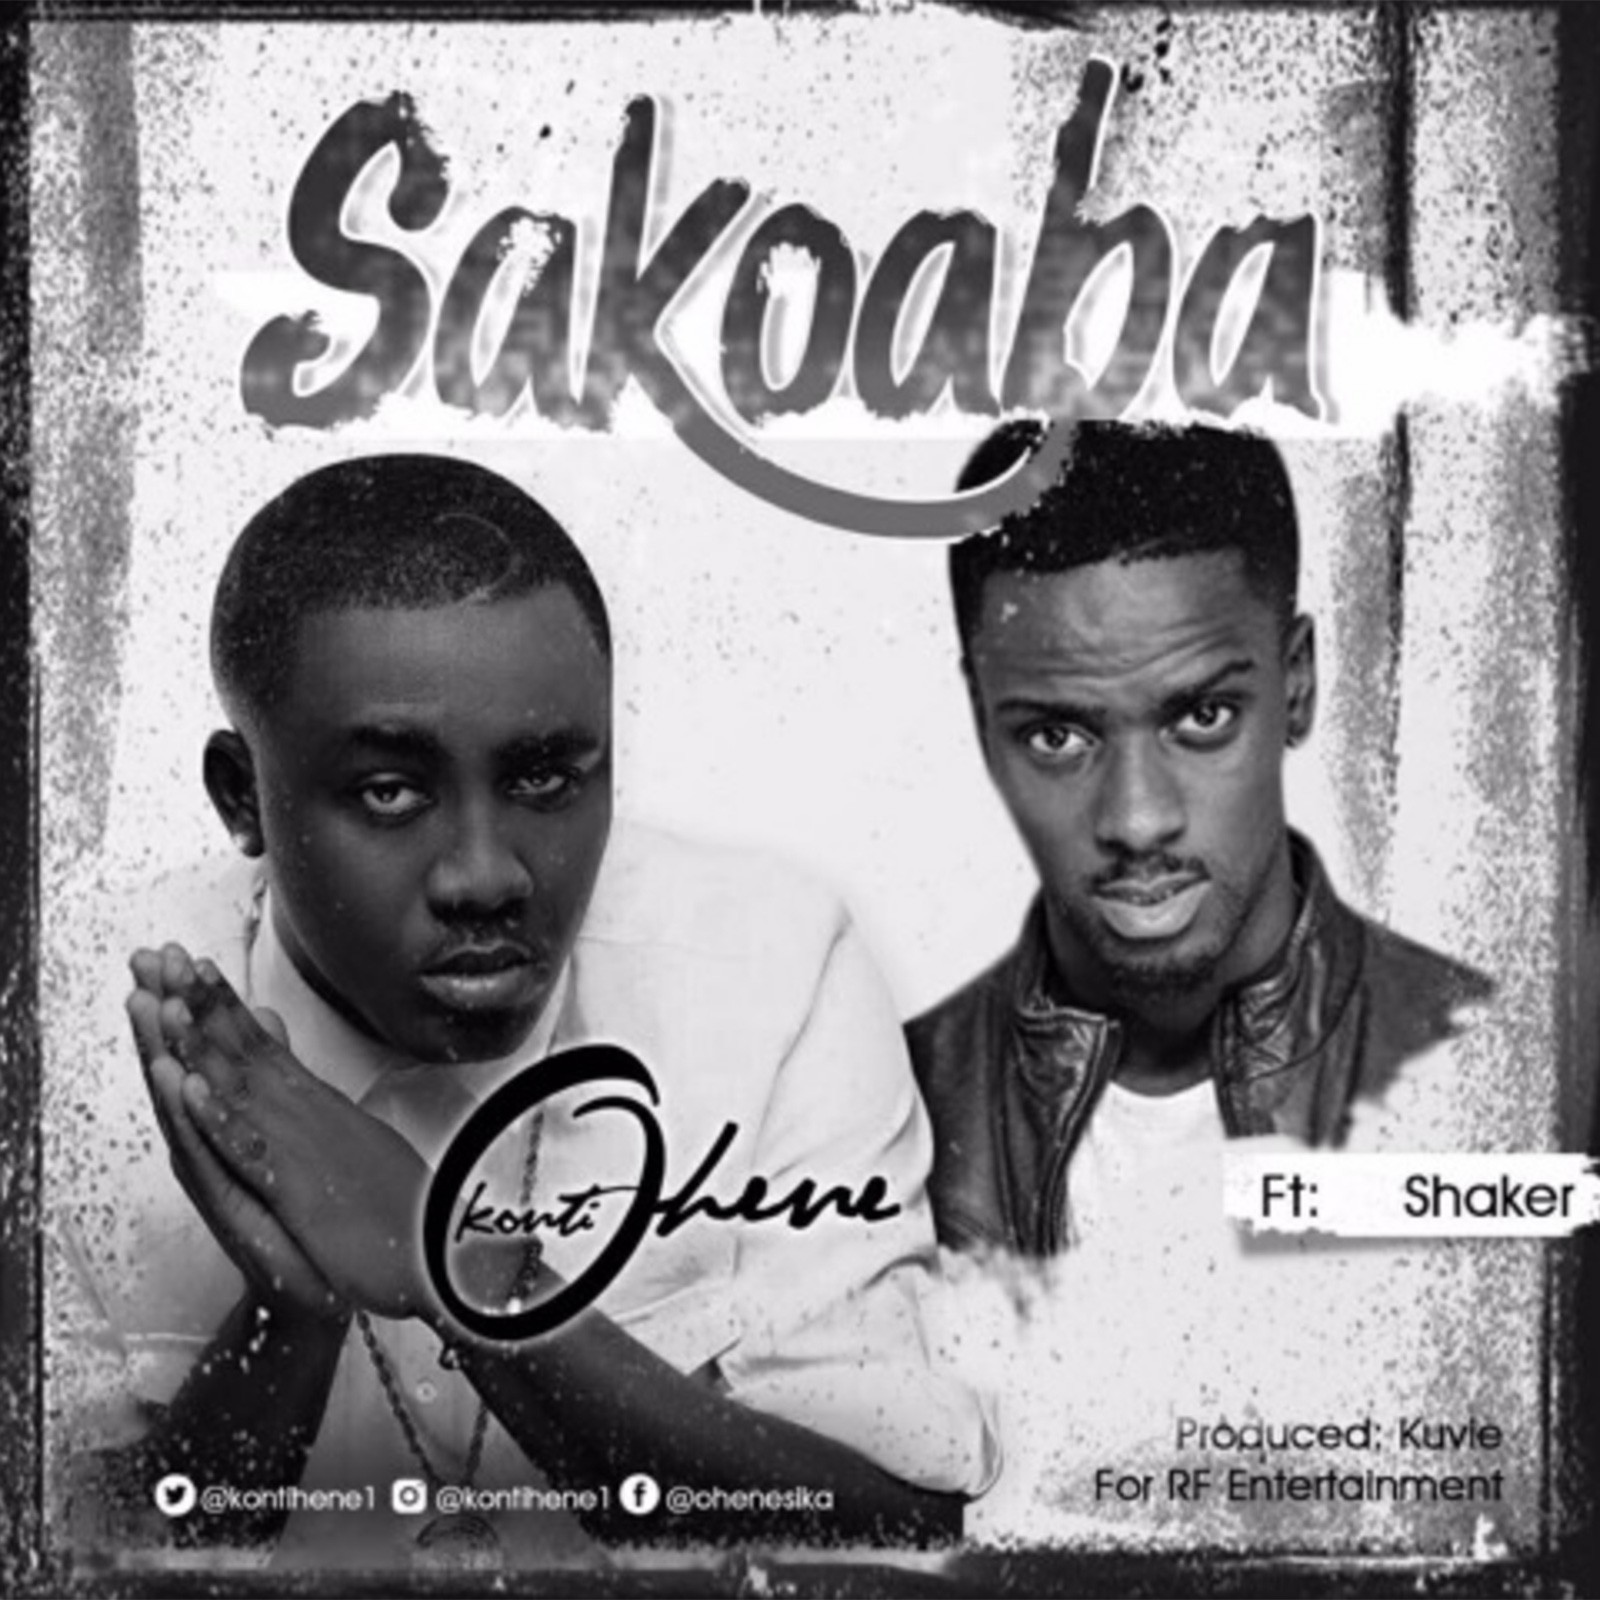 Sakoaba by Kontihene feat. Shaker